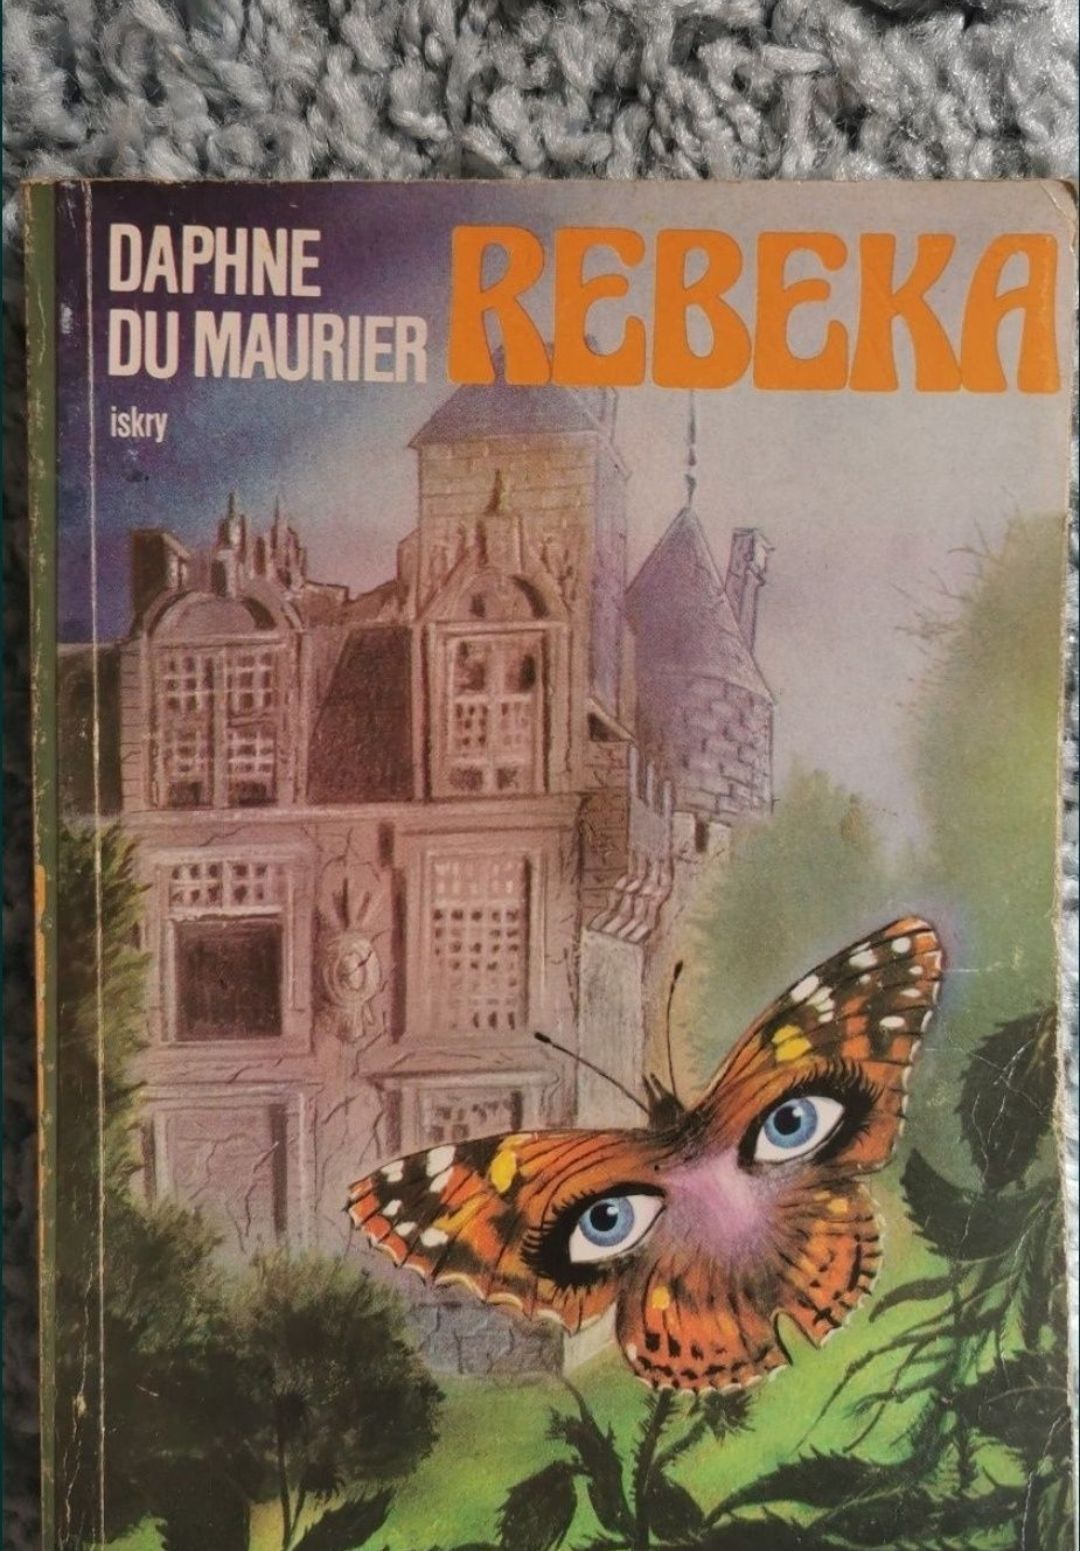 Rebeka 
Daphne du Maurier